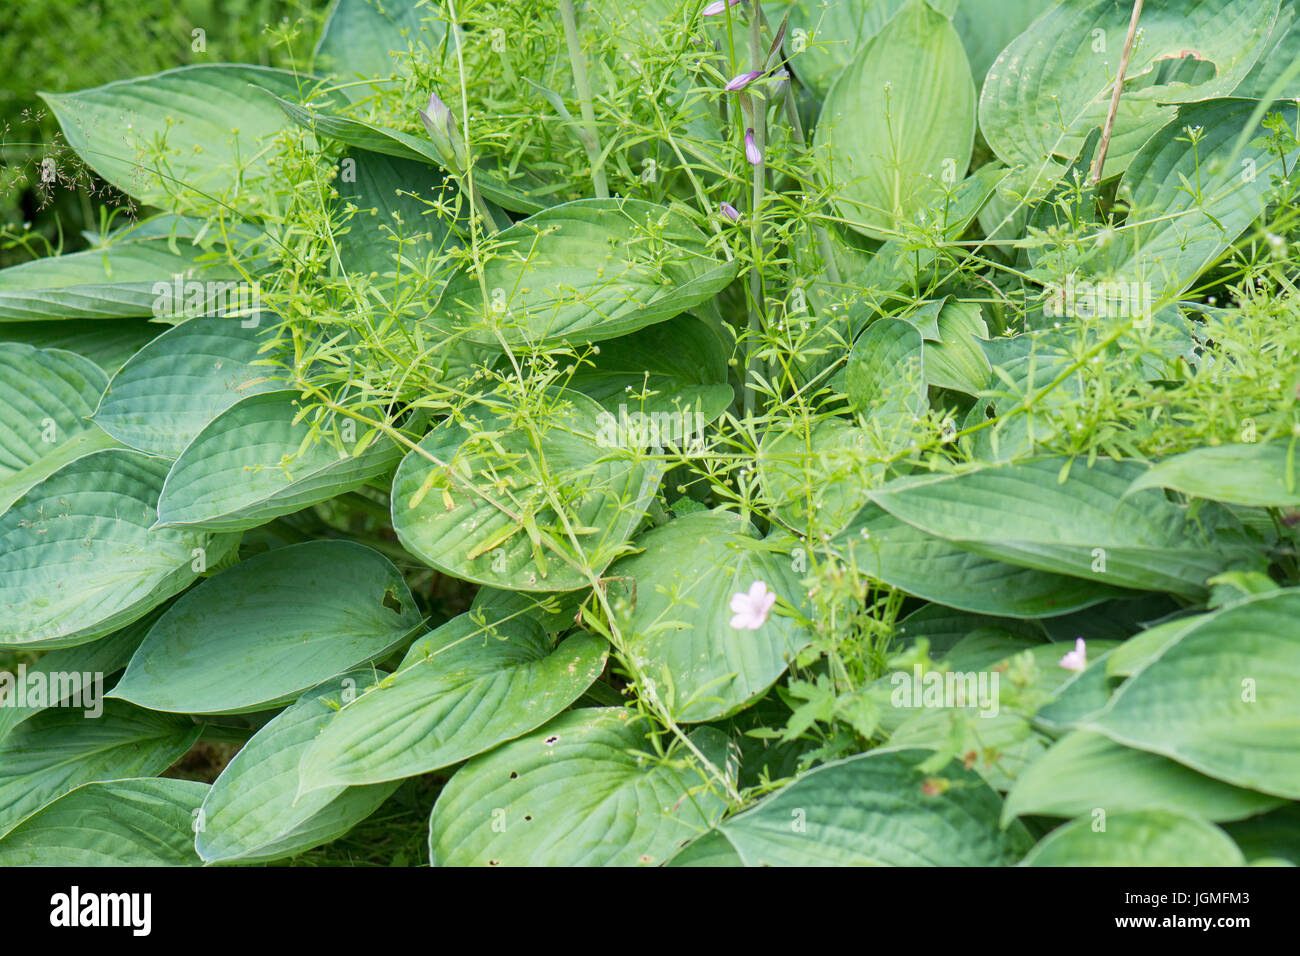 Les mauvaises herbes du jardin - gaillet gratteron Galium aparine - croissant au fil de l'usine hosta Banque D'Images